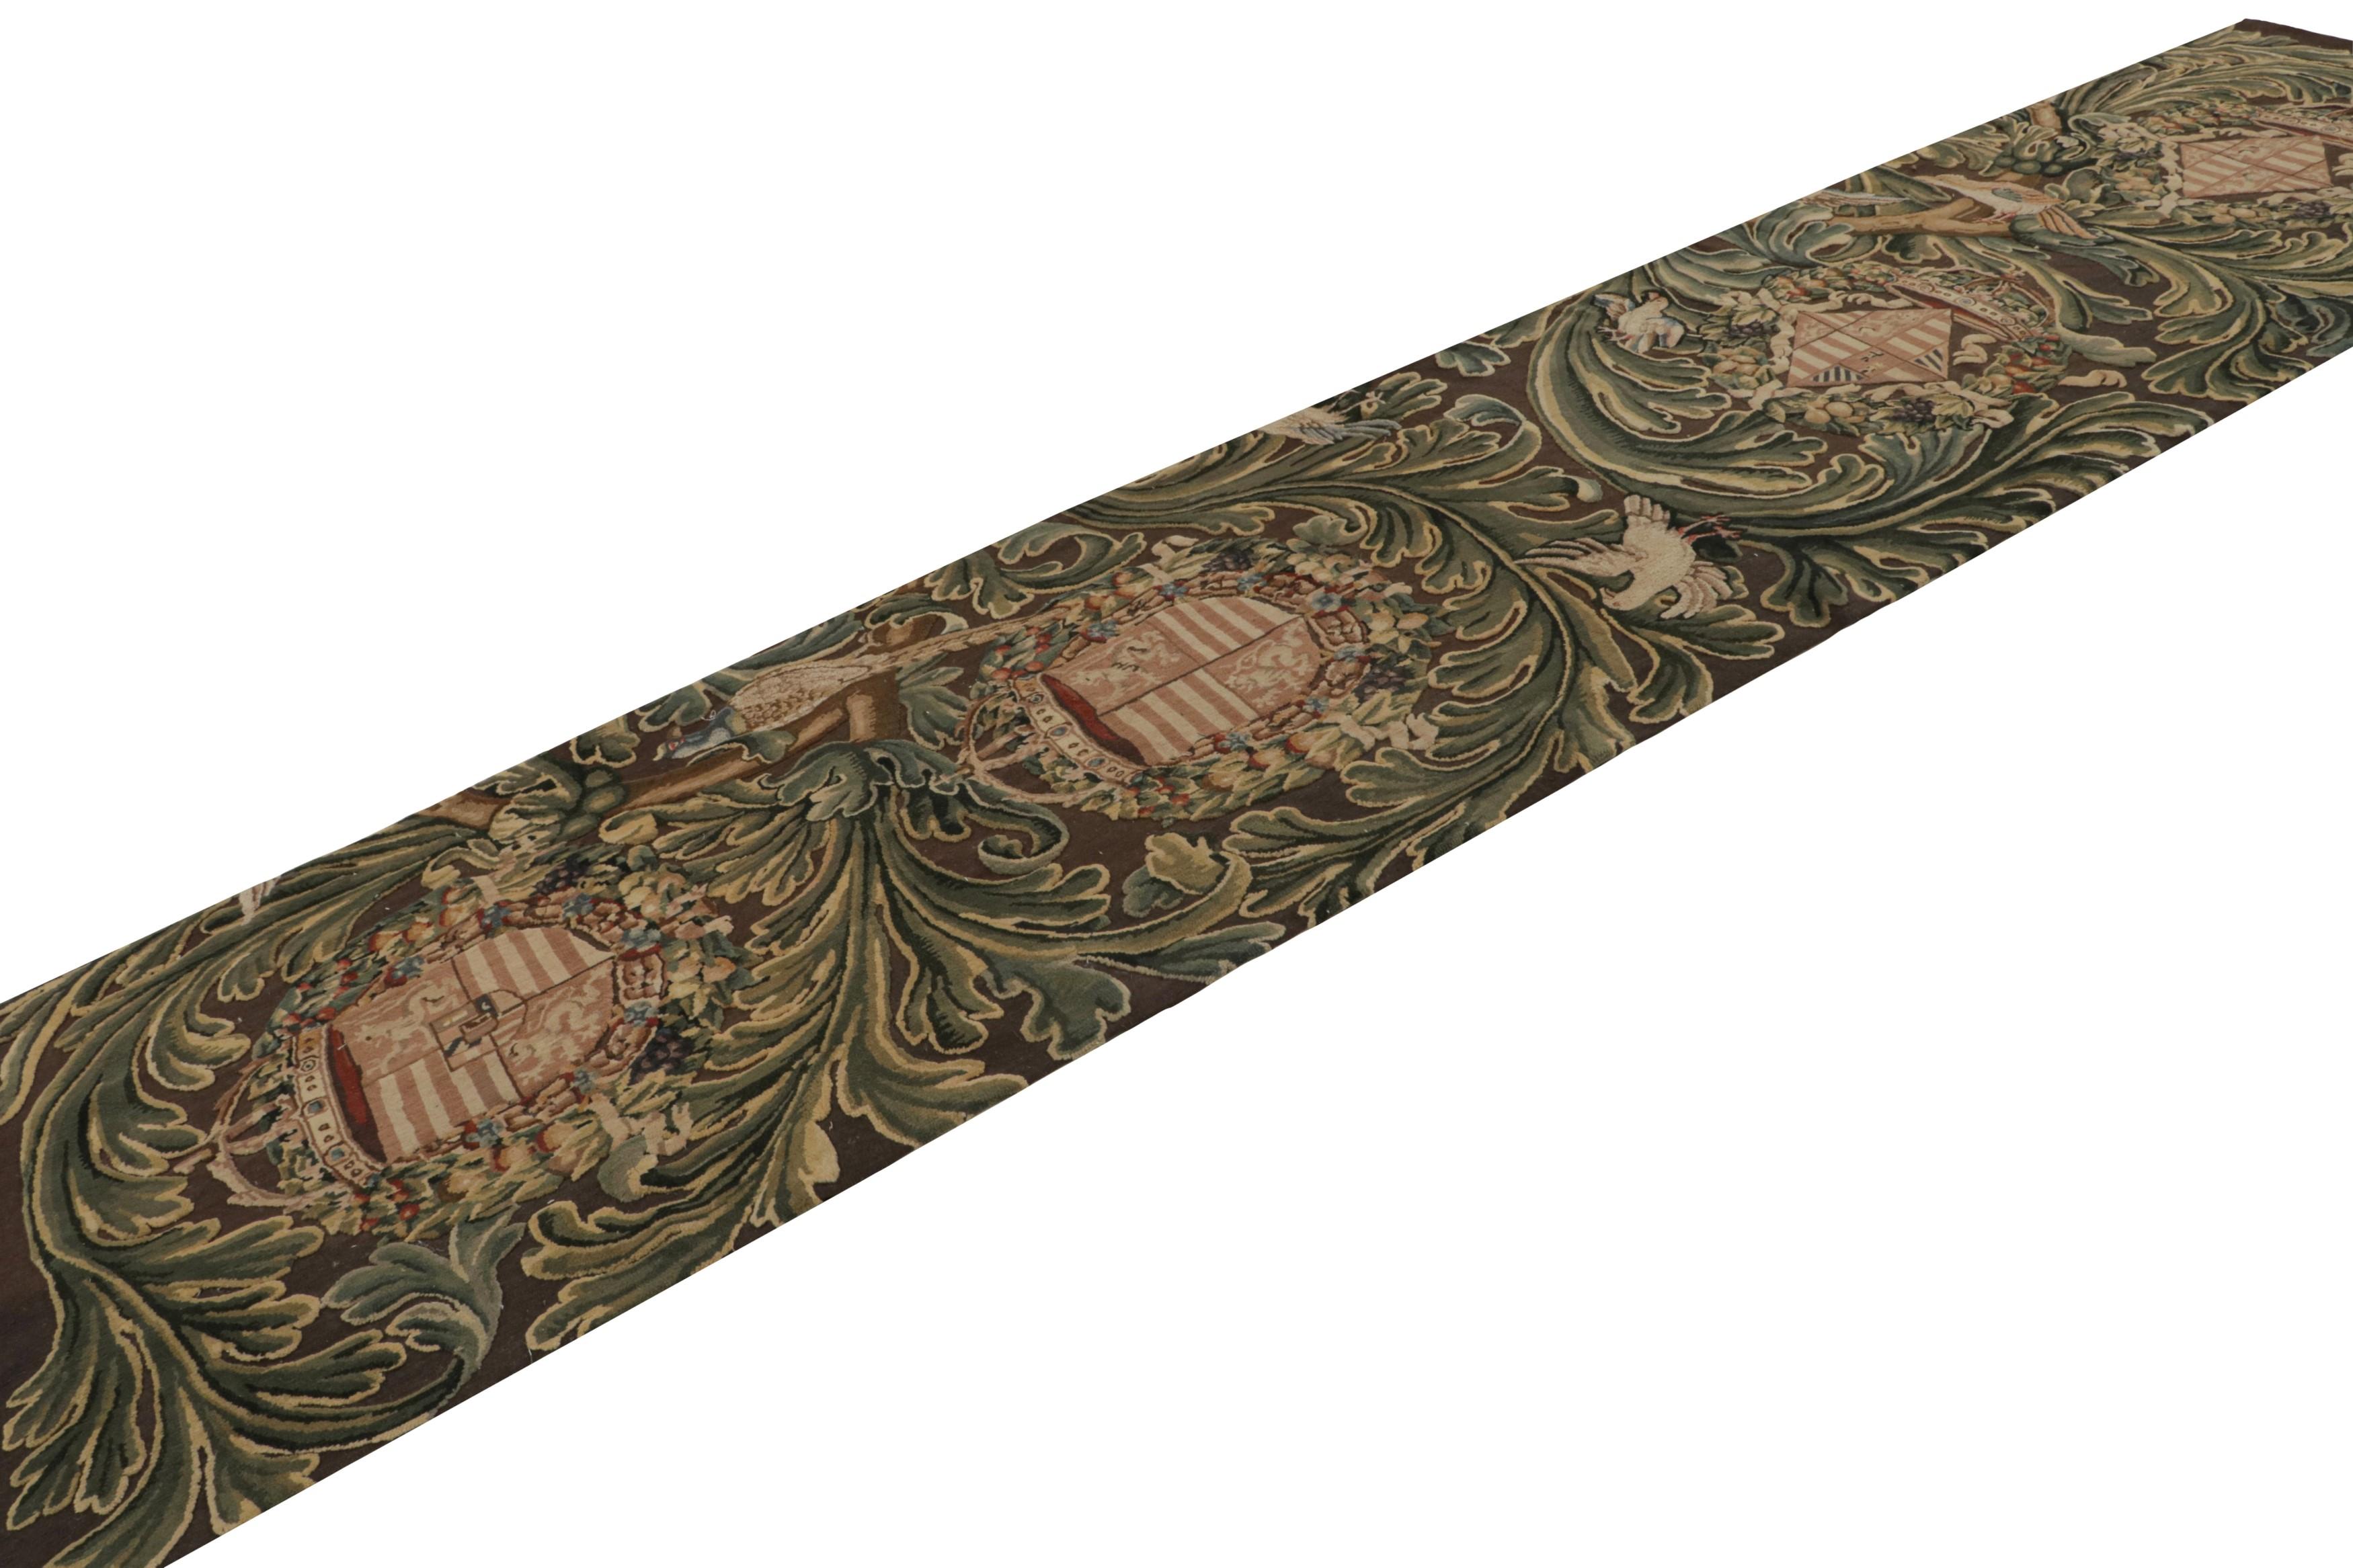 Un ajout intéressant à la collection contemporaine Rug & Kilim, ce tapis de course 3x14 de style Tudor à tissage plat présente des crêtes et des motifs floraux dans les tons vert, beige/marron et bleu, à travers le champ. 

Sur le design : 

Les